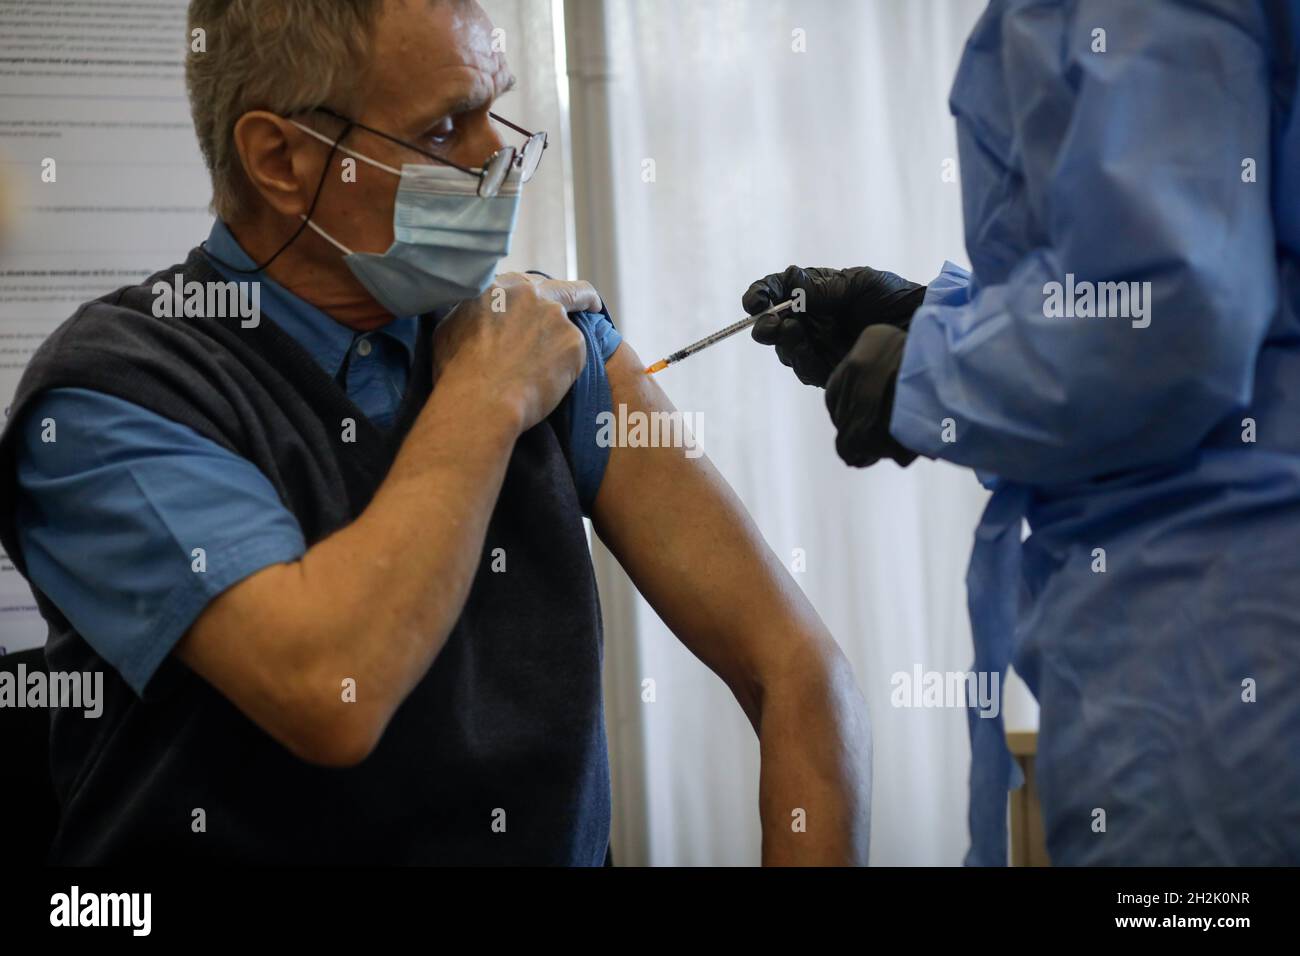 Bukarest, Rumänien - 22. Oktober 2021: Details zu einer Person, die den Impfstoff SARS Cov 2 (Covid-19) erhalten hat. Stockfoto